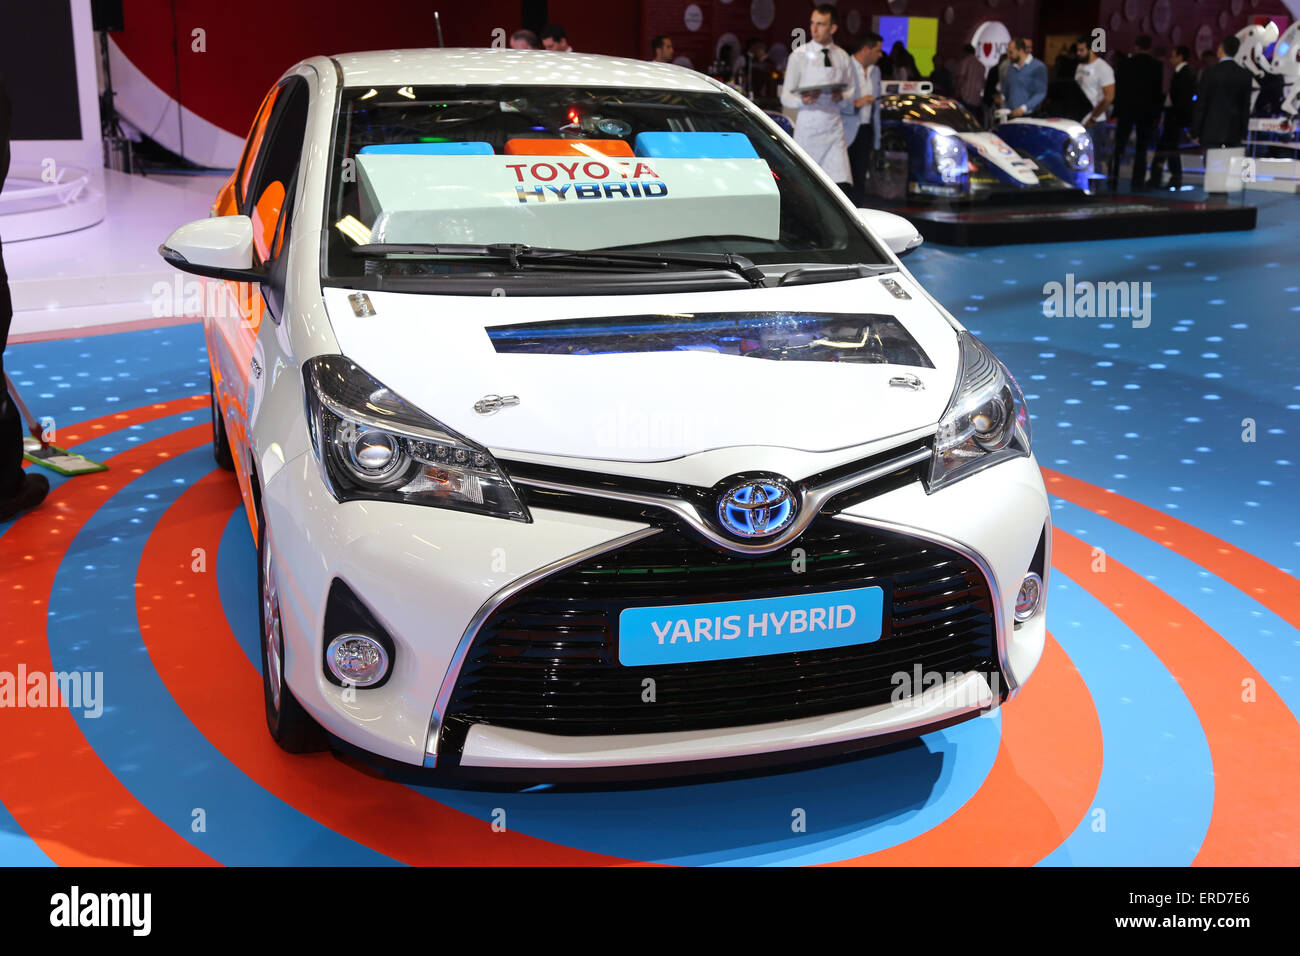 ISTANBUL, TURKEY - 21, 2015: Toyota Yaris Hybrid in Autoshow 2015 Stock Photo Alamy